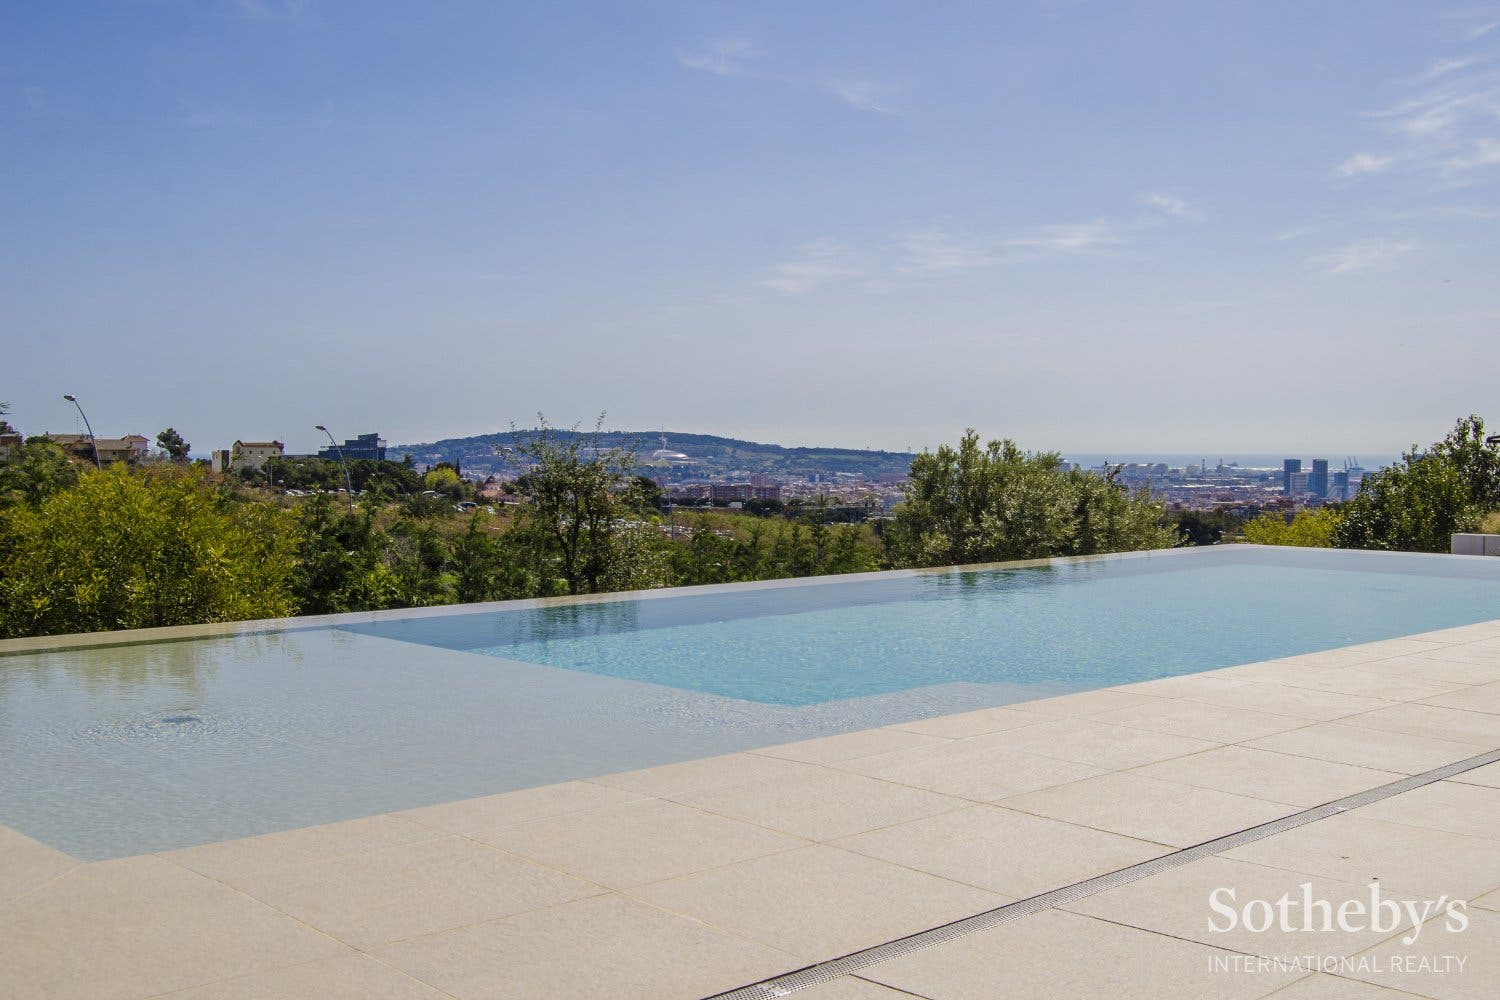 La piscina de la casa de Arda Turan en Esplugues de Llobregat (Barcelona) | Sotheby's